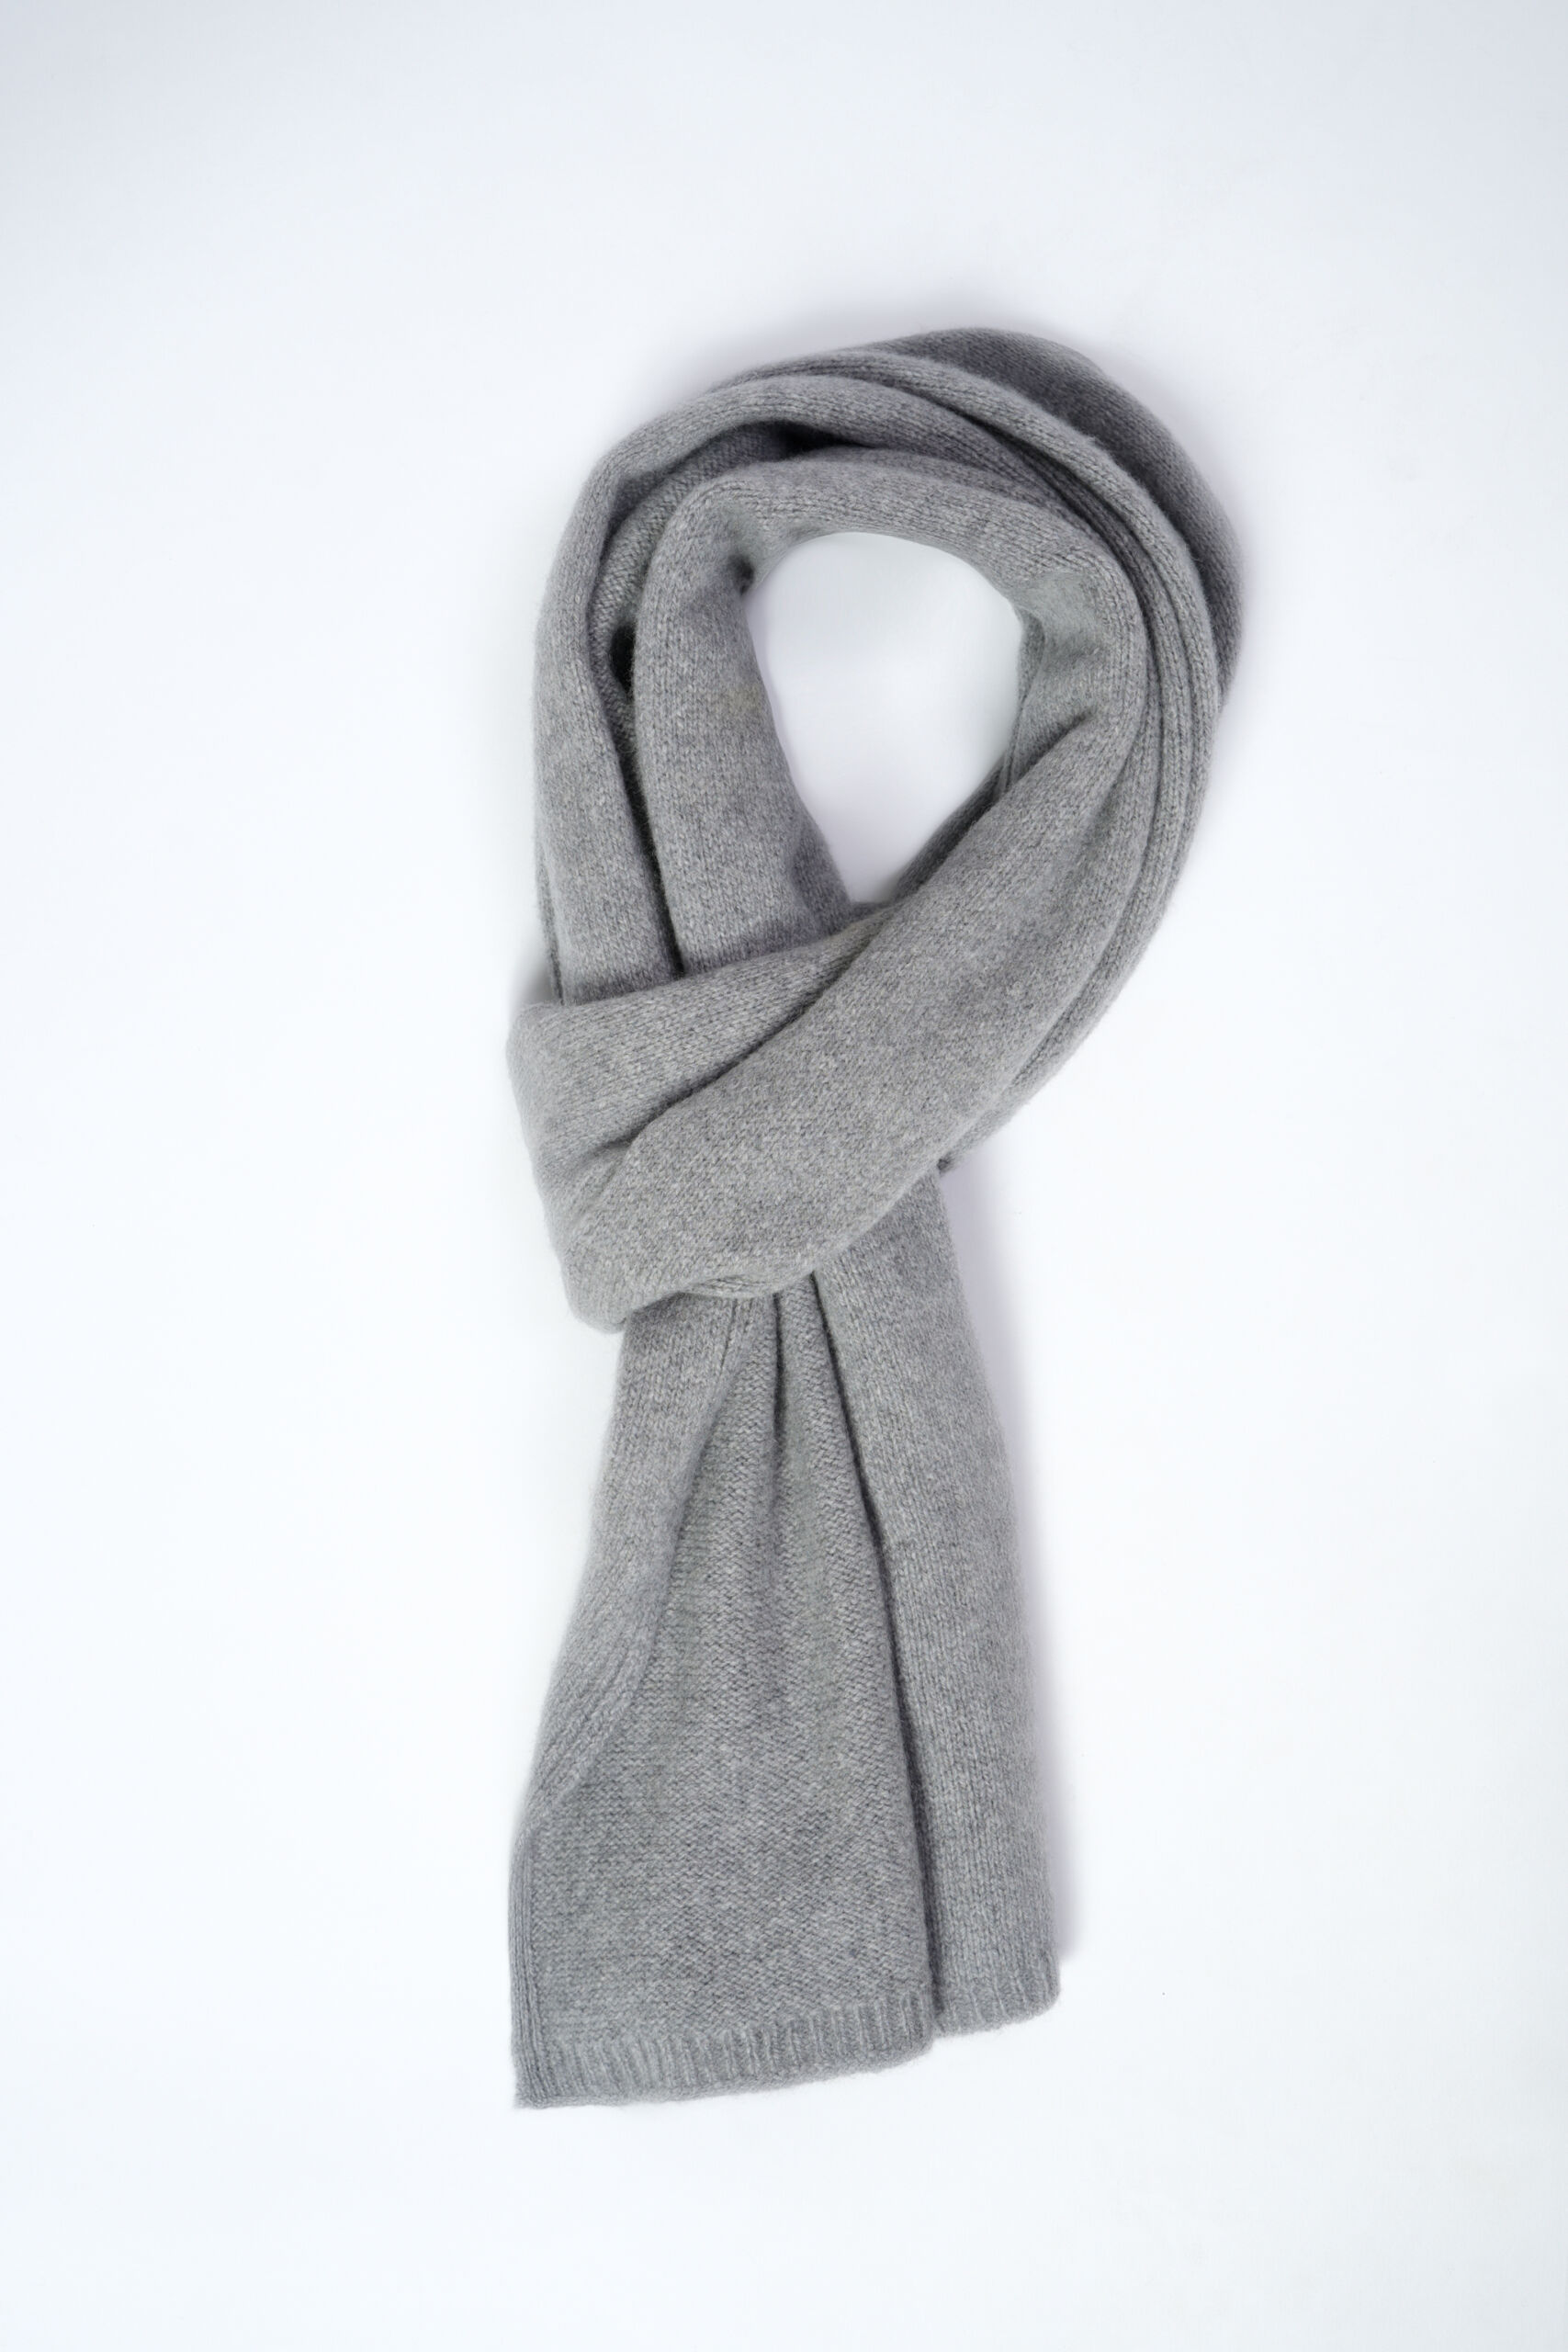 Trento Perla 2 scaled 1stAmerican sciarpa da uomo 100% cashmere misura 30 x 180 - sciarpa invernale in puro cashmere 100% Made in Italy